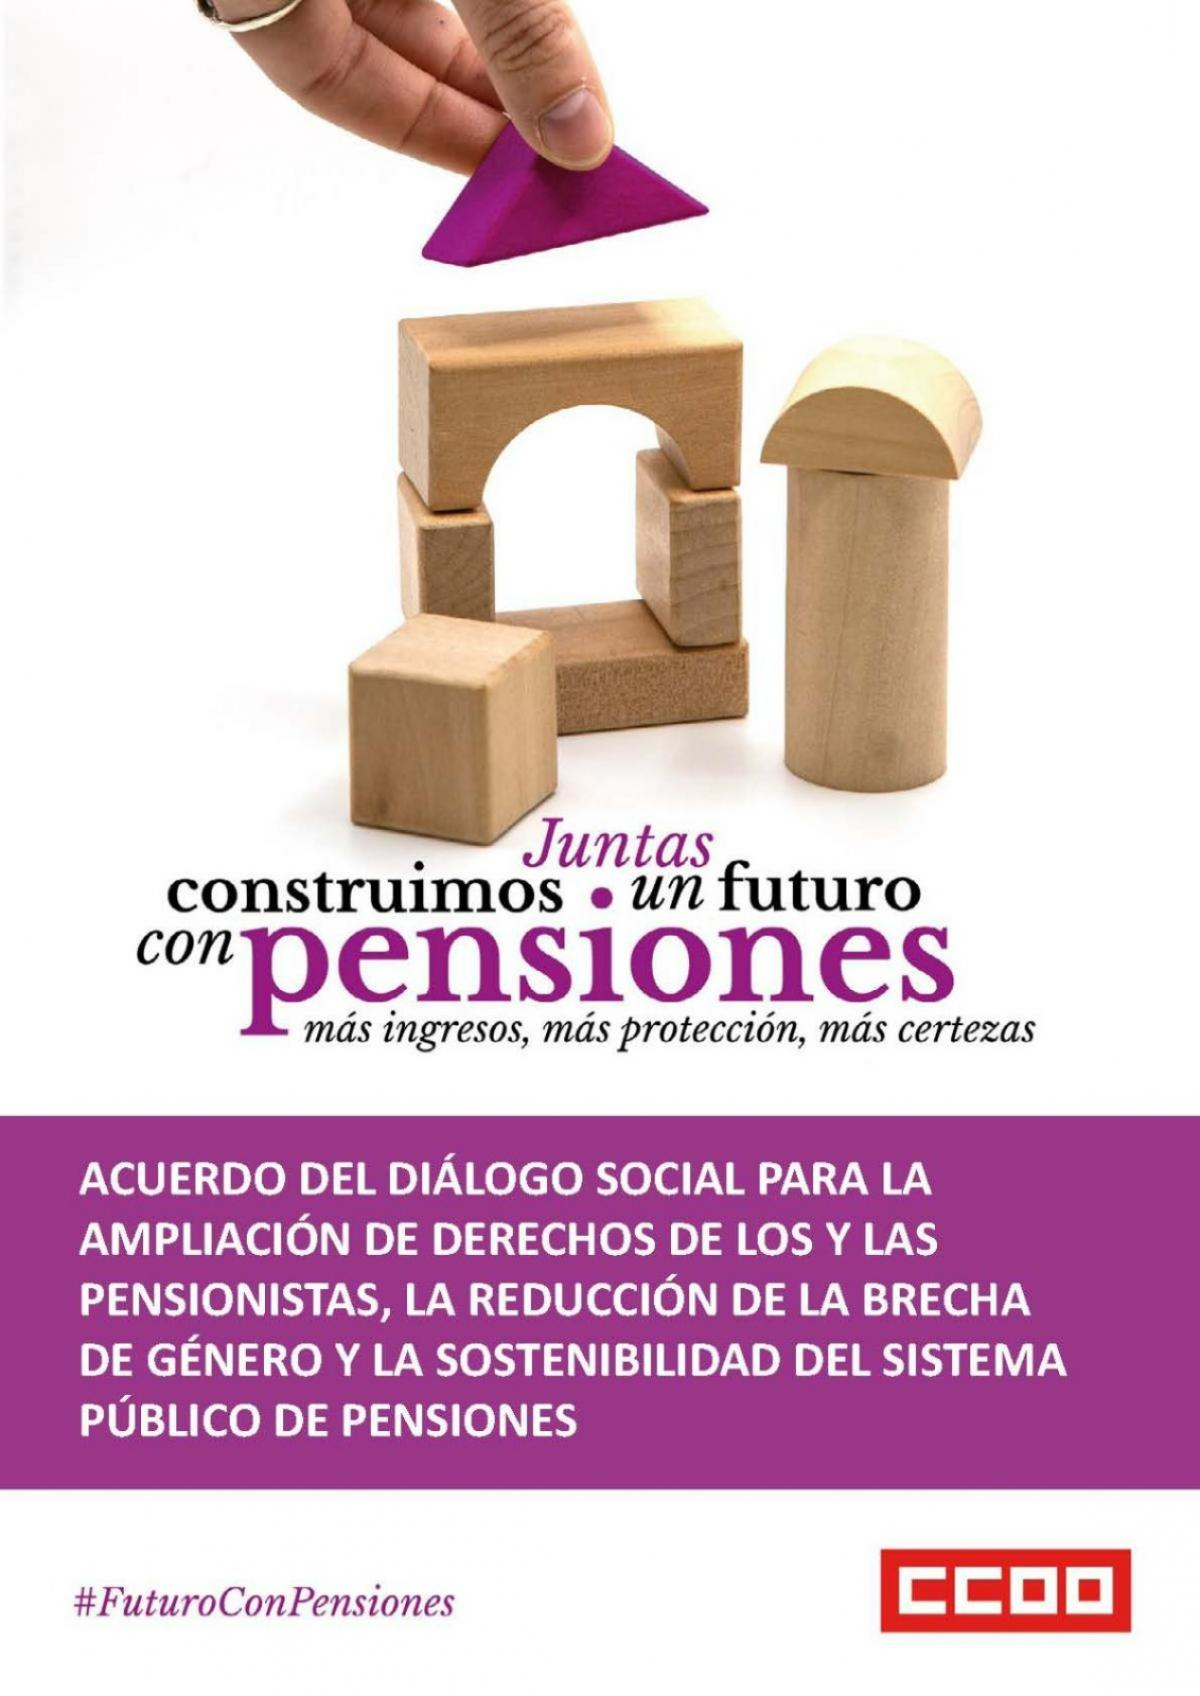 Acuerdo del Diálgo Social para la ampliación de derechos de los y las pensionistas